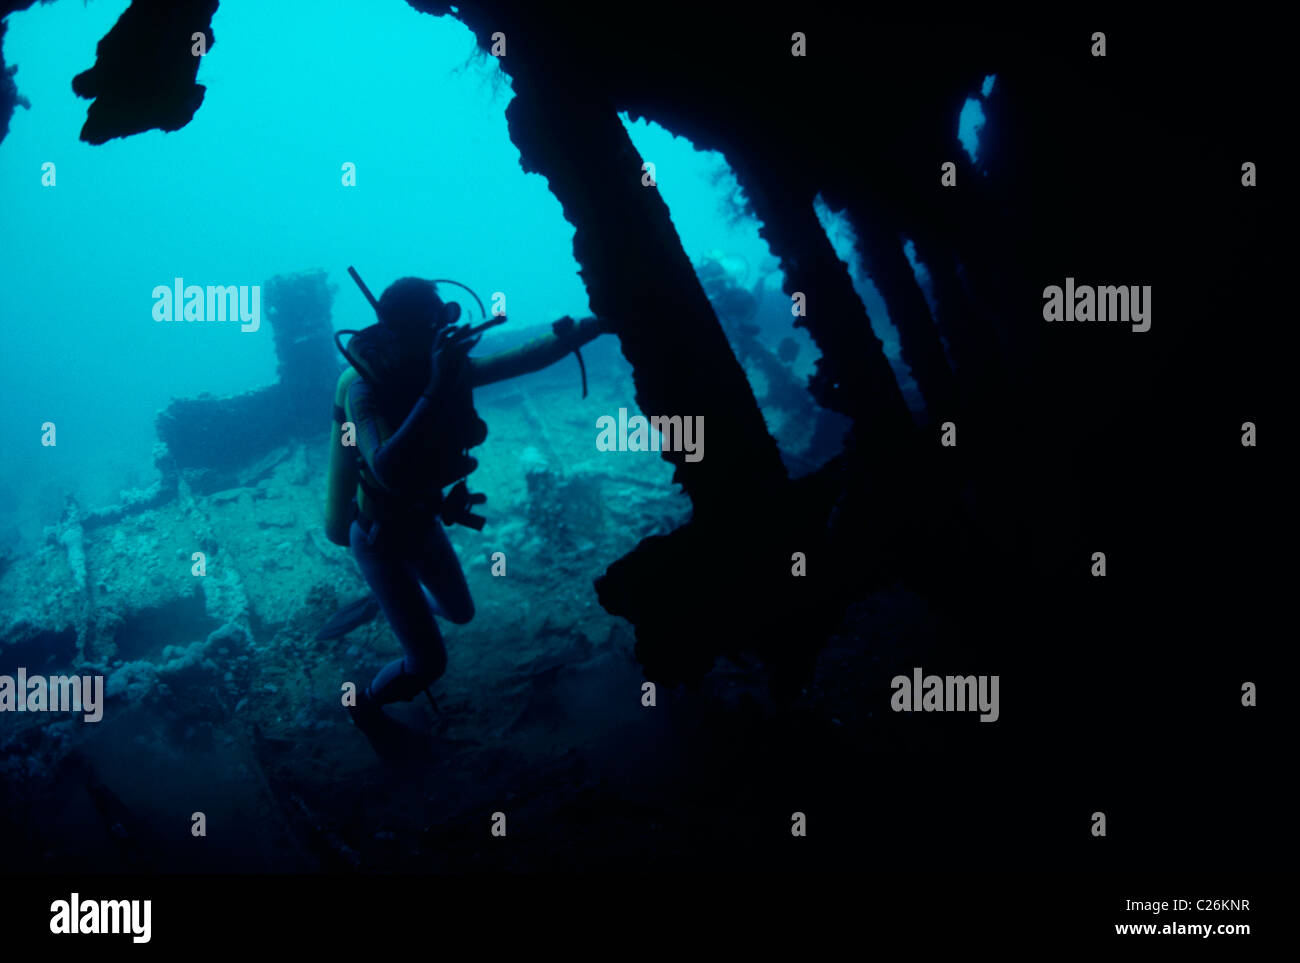 La découverte de la plongée épave vieux de 120 ans "unraven' . Mer Rouge - Egypte Banque D'Images